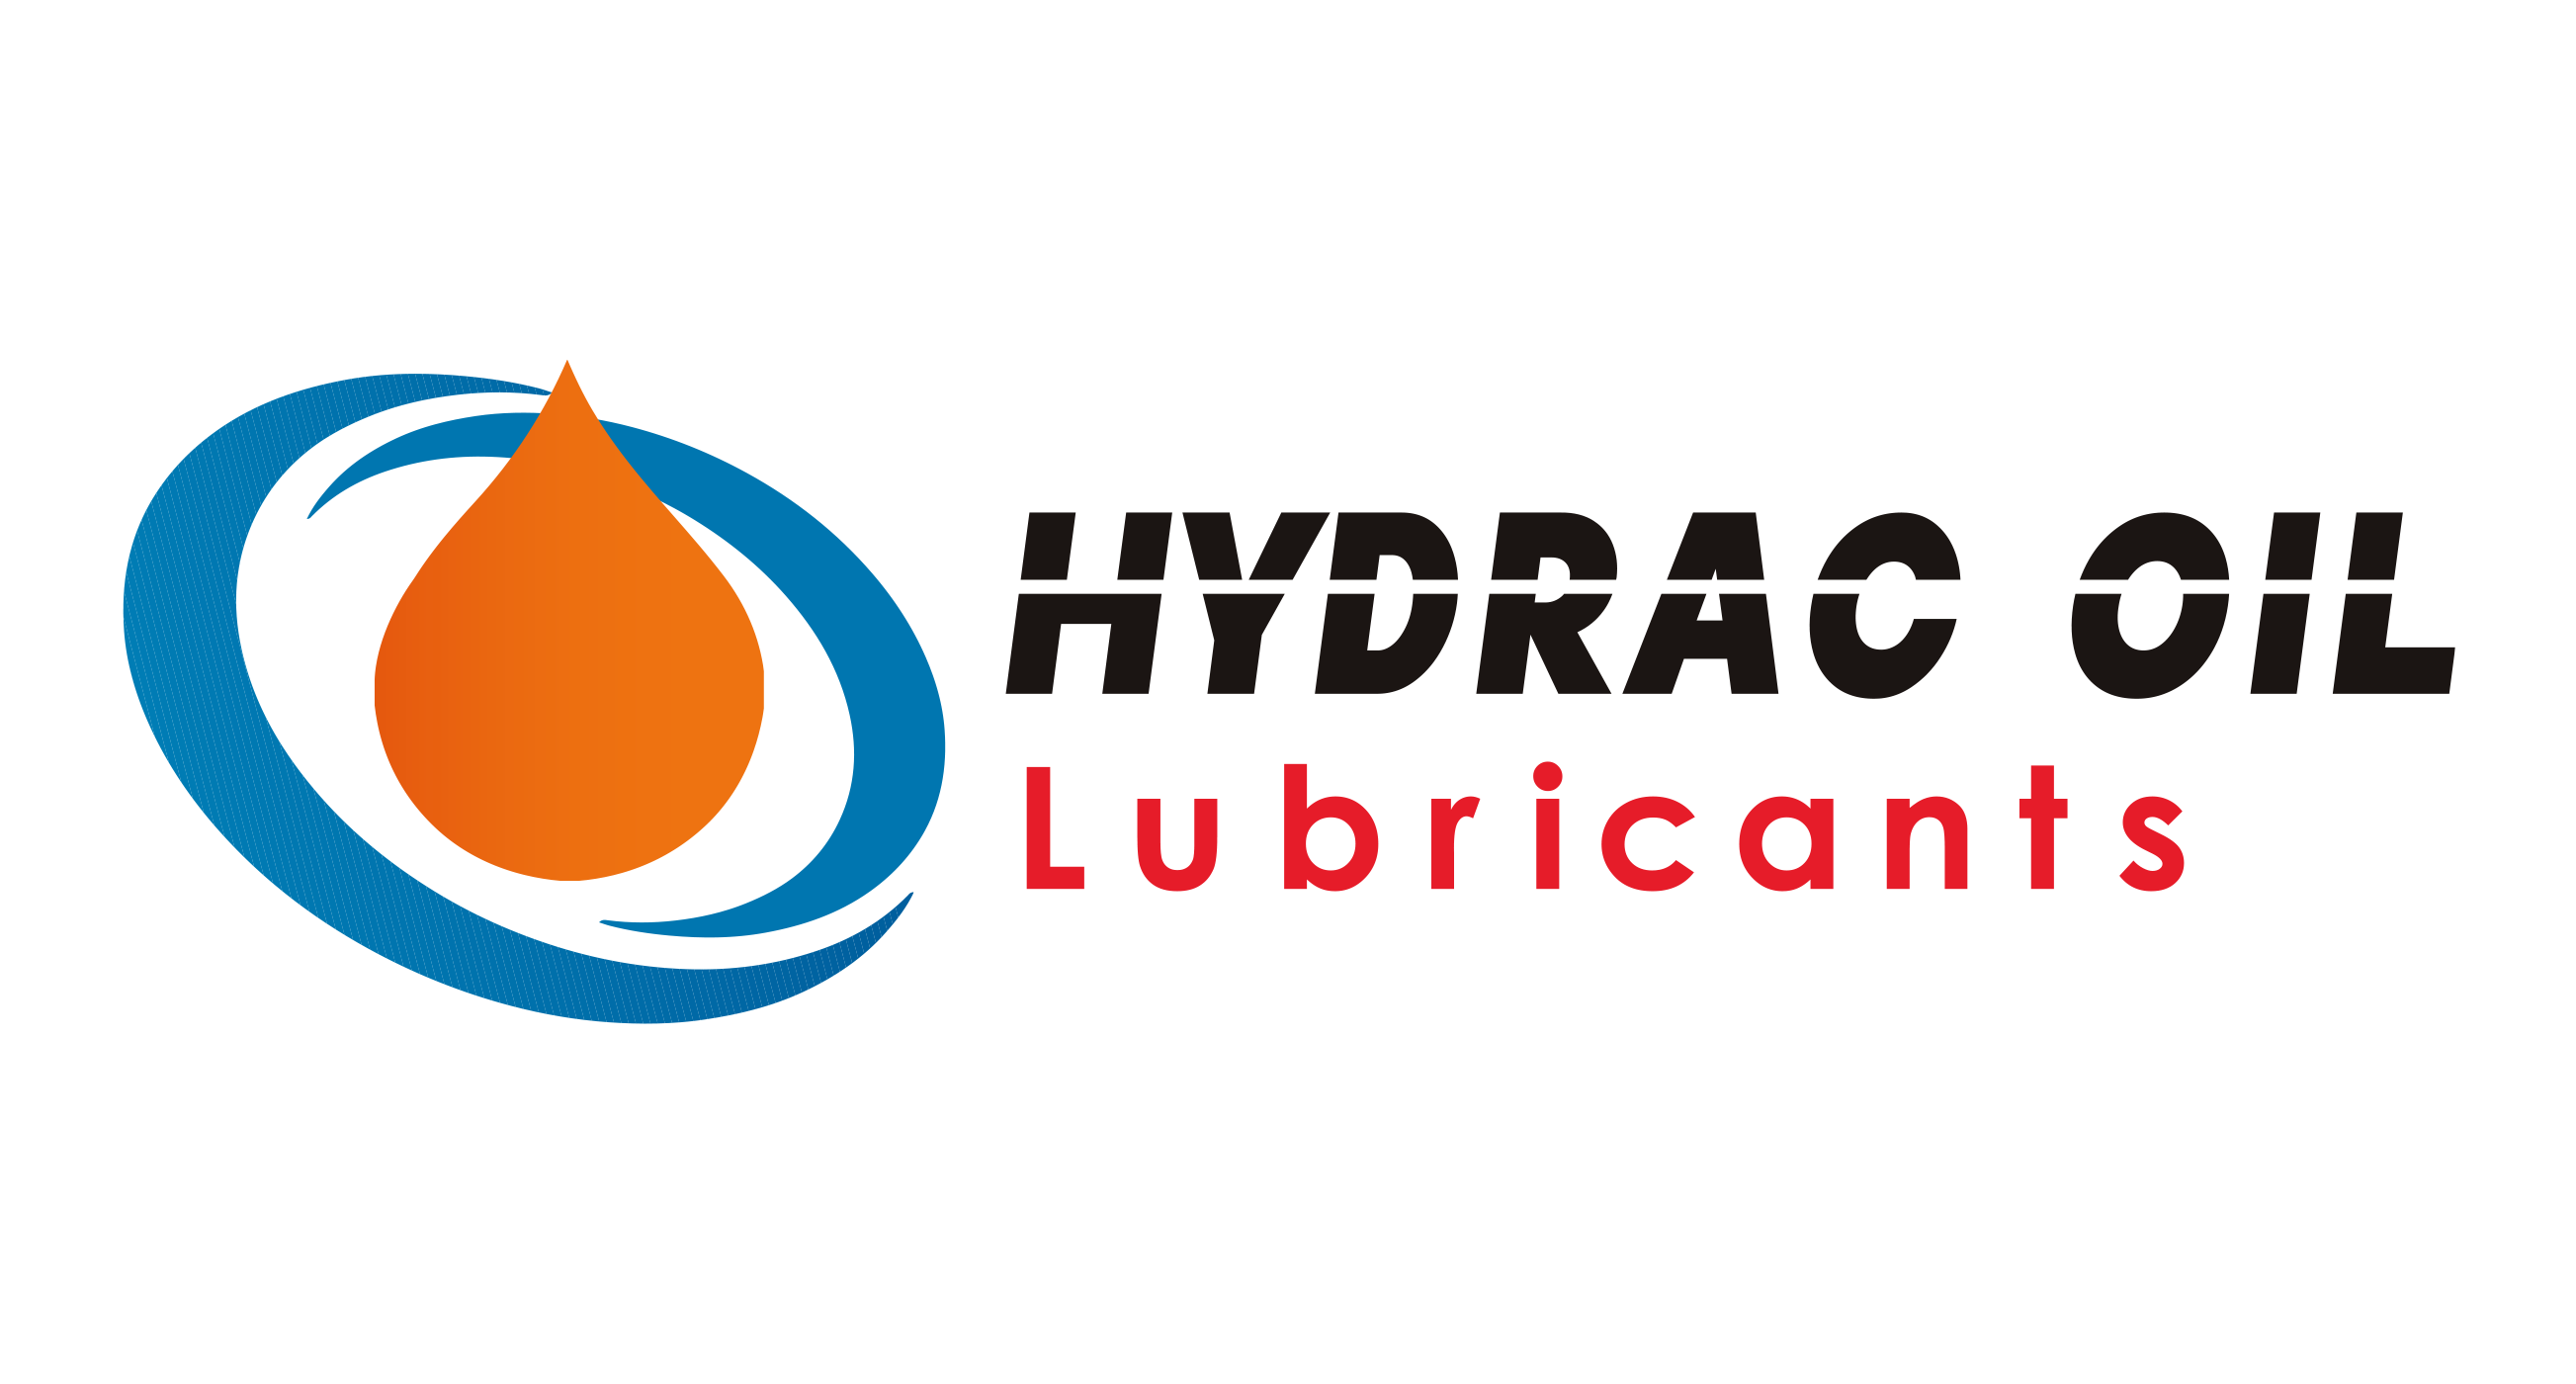 Hydrac oil